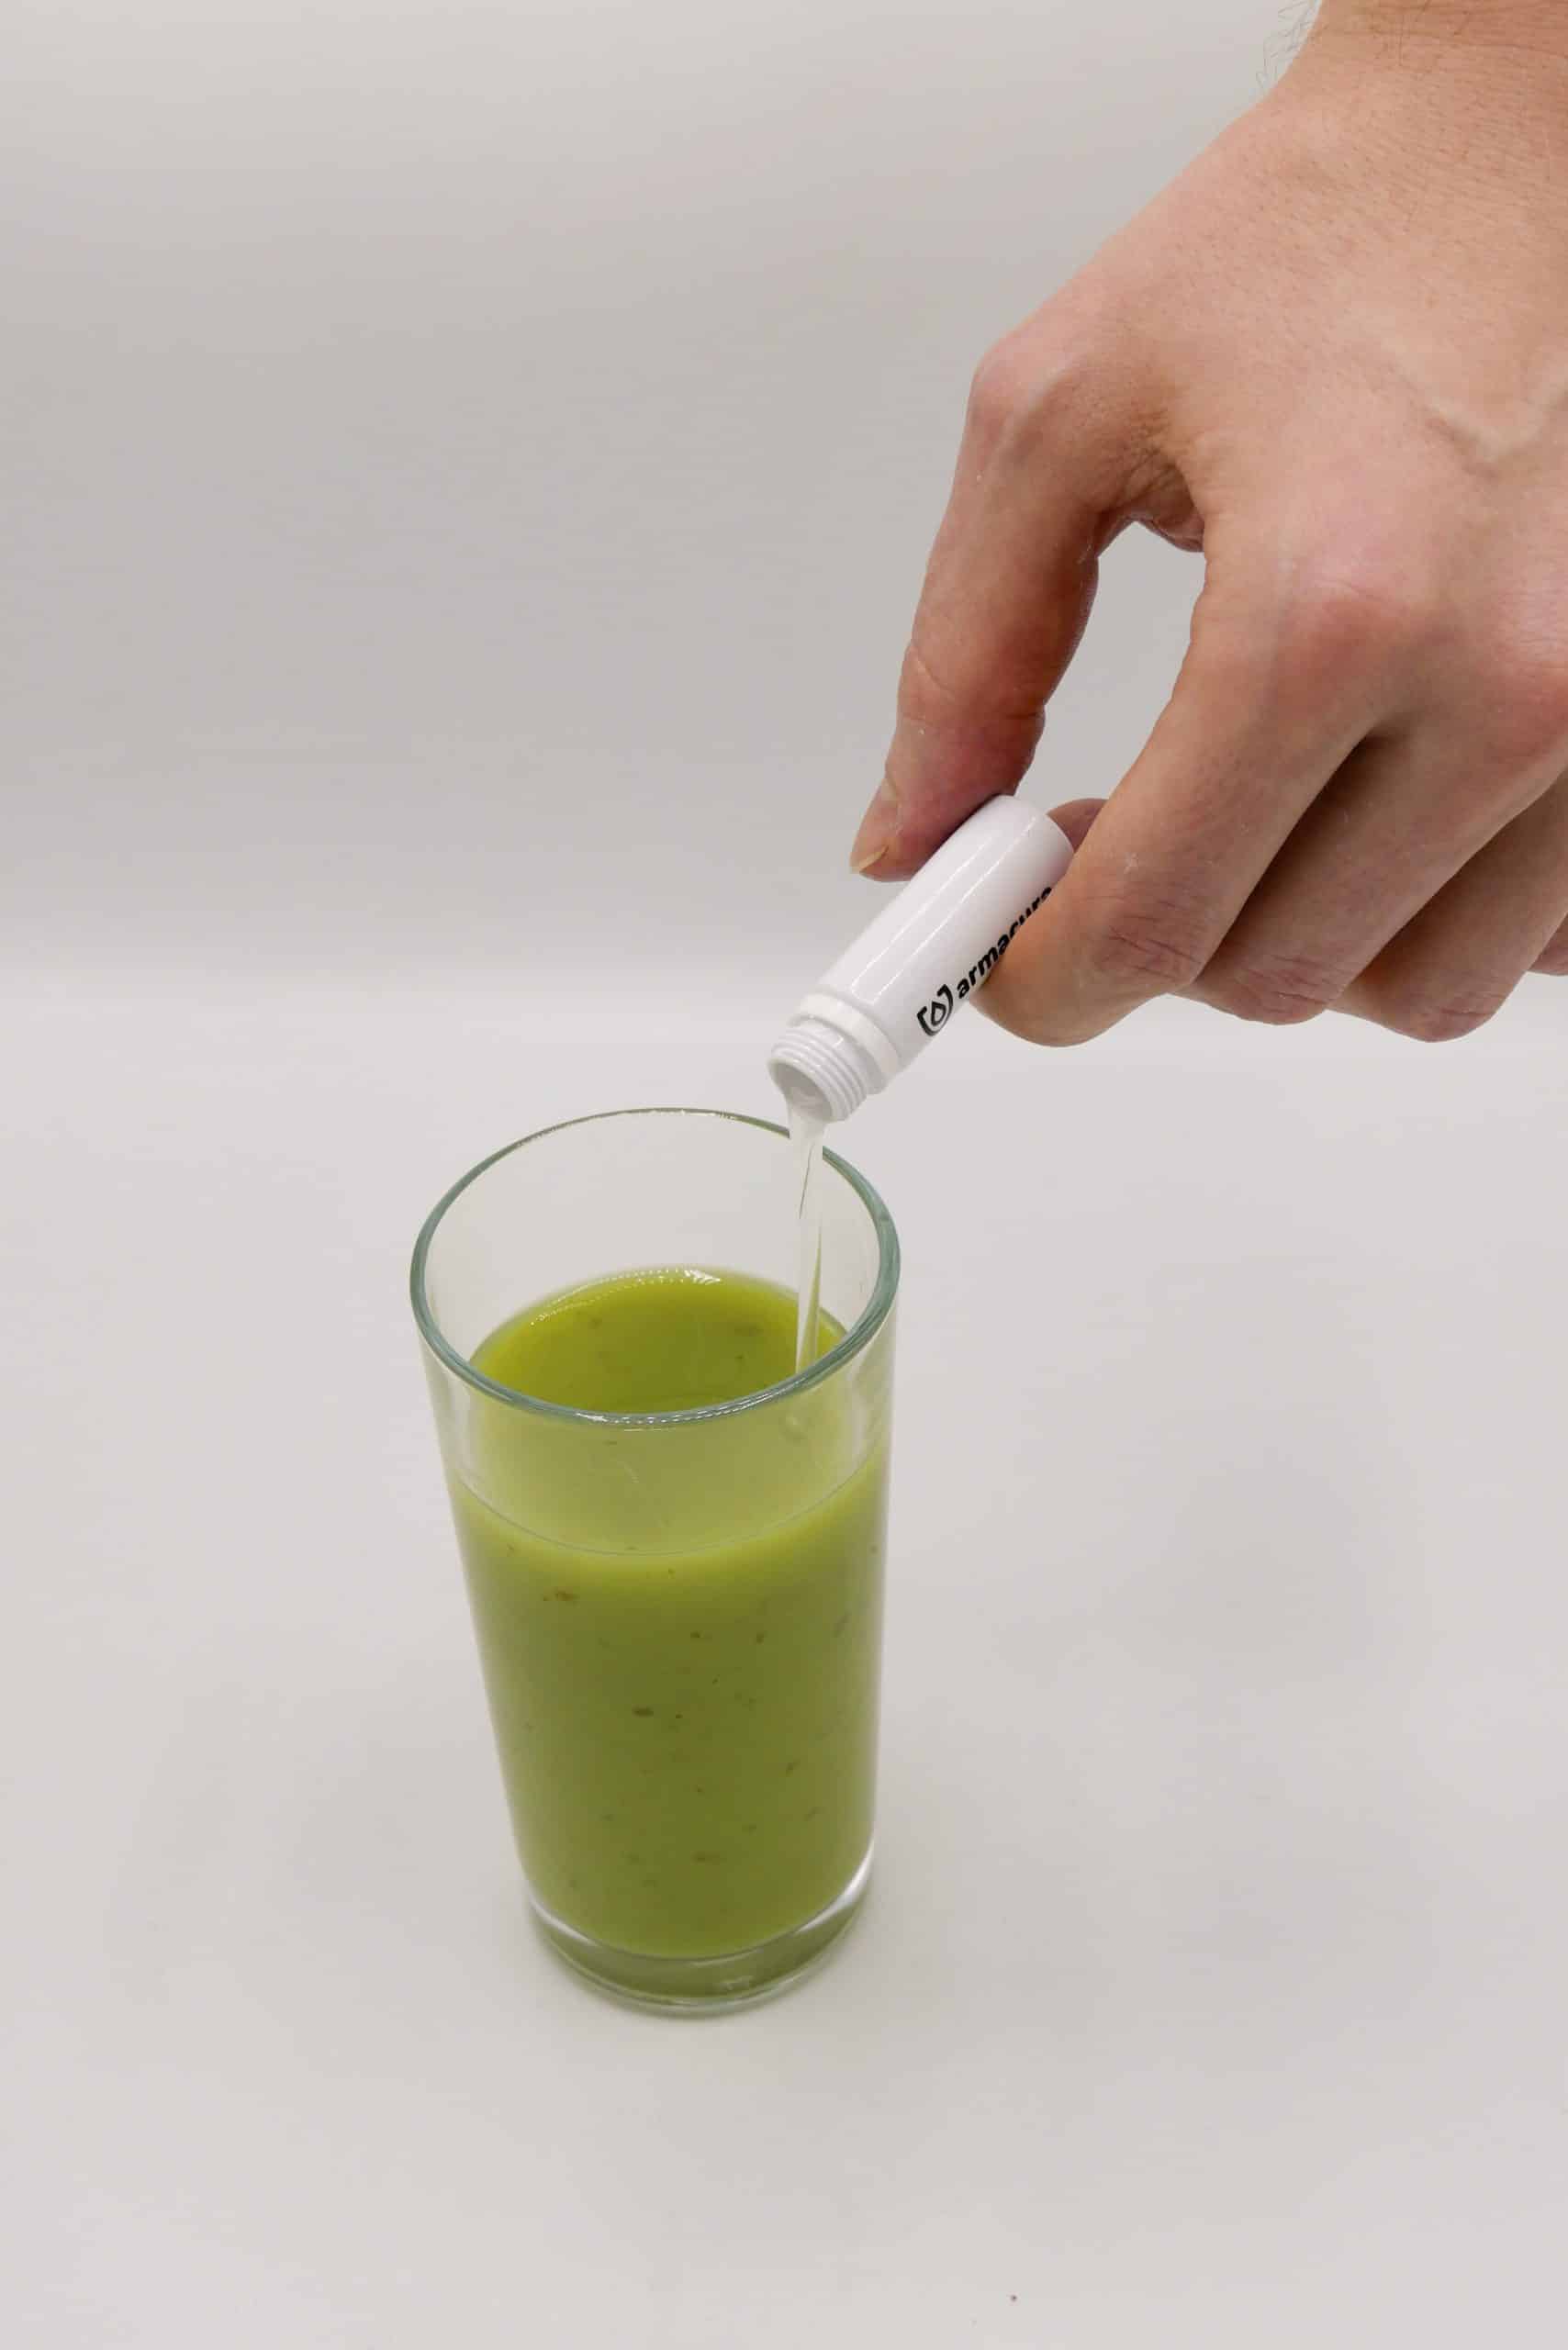 Nahaufnahme von Hand mit armacura Ampulle, die in ein Glas grünen Smoothie geschüttet wird